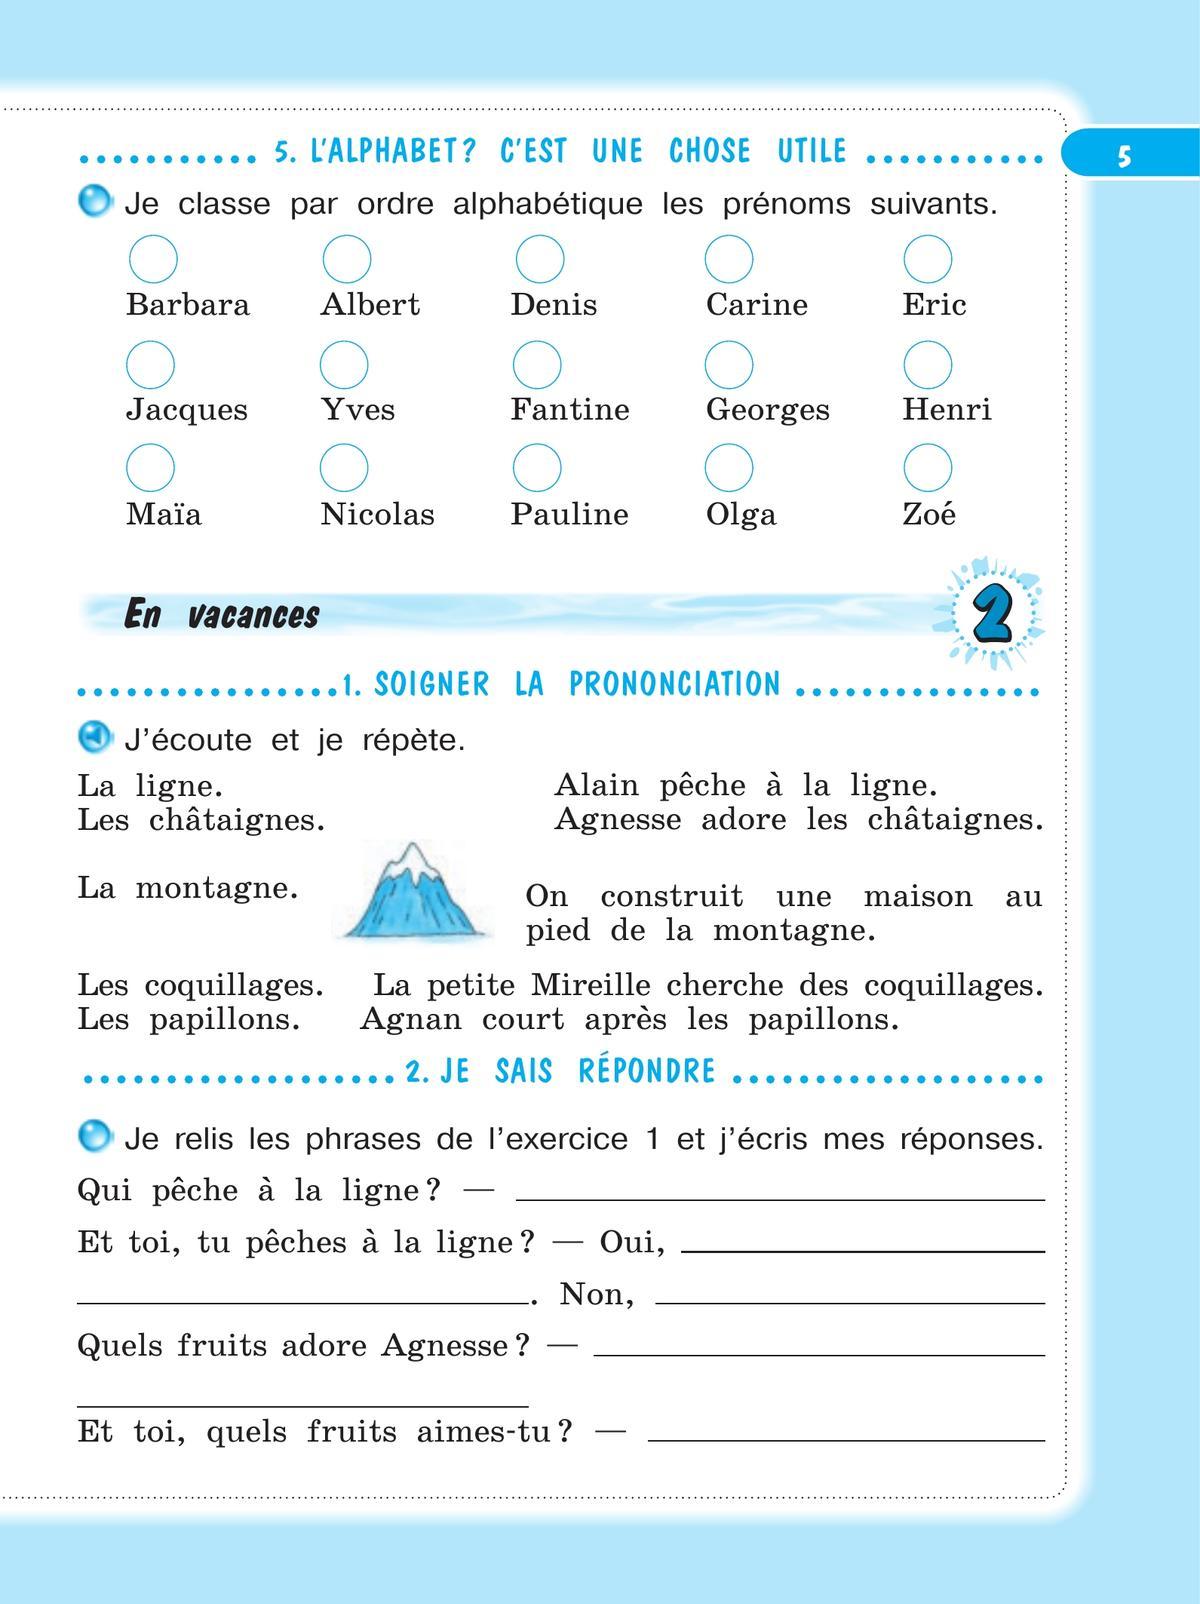 Французский язык. Рабочая тетрадь. 4 класс 5